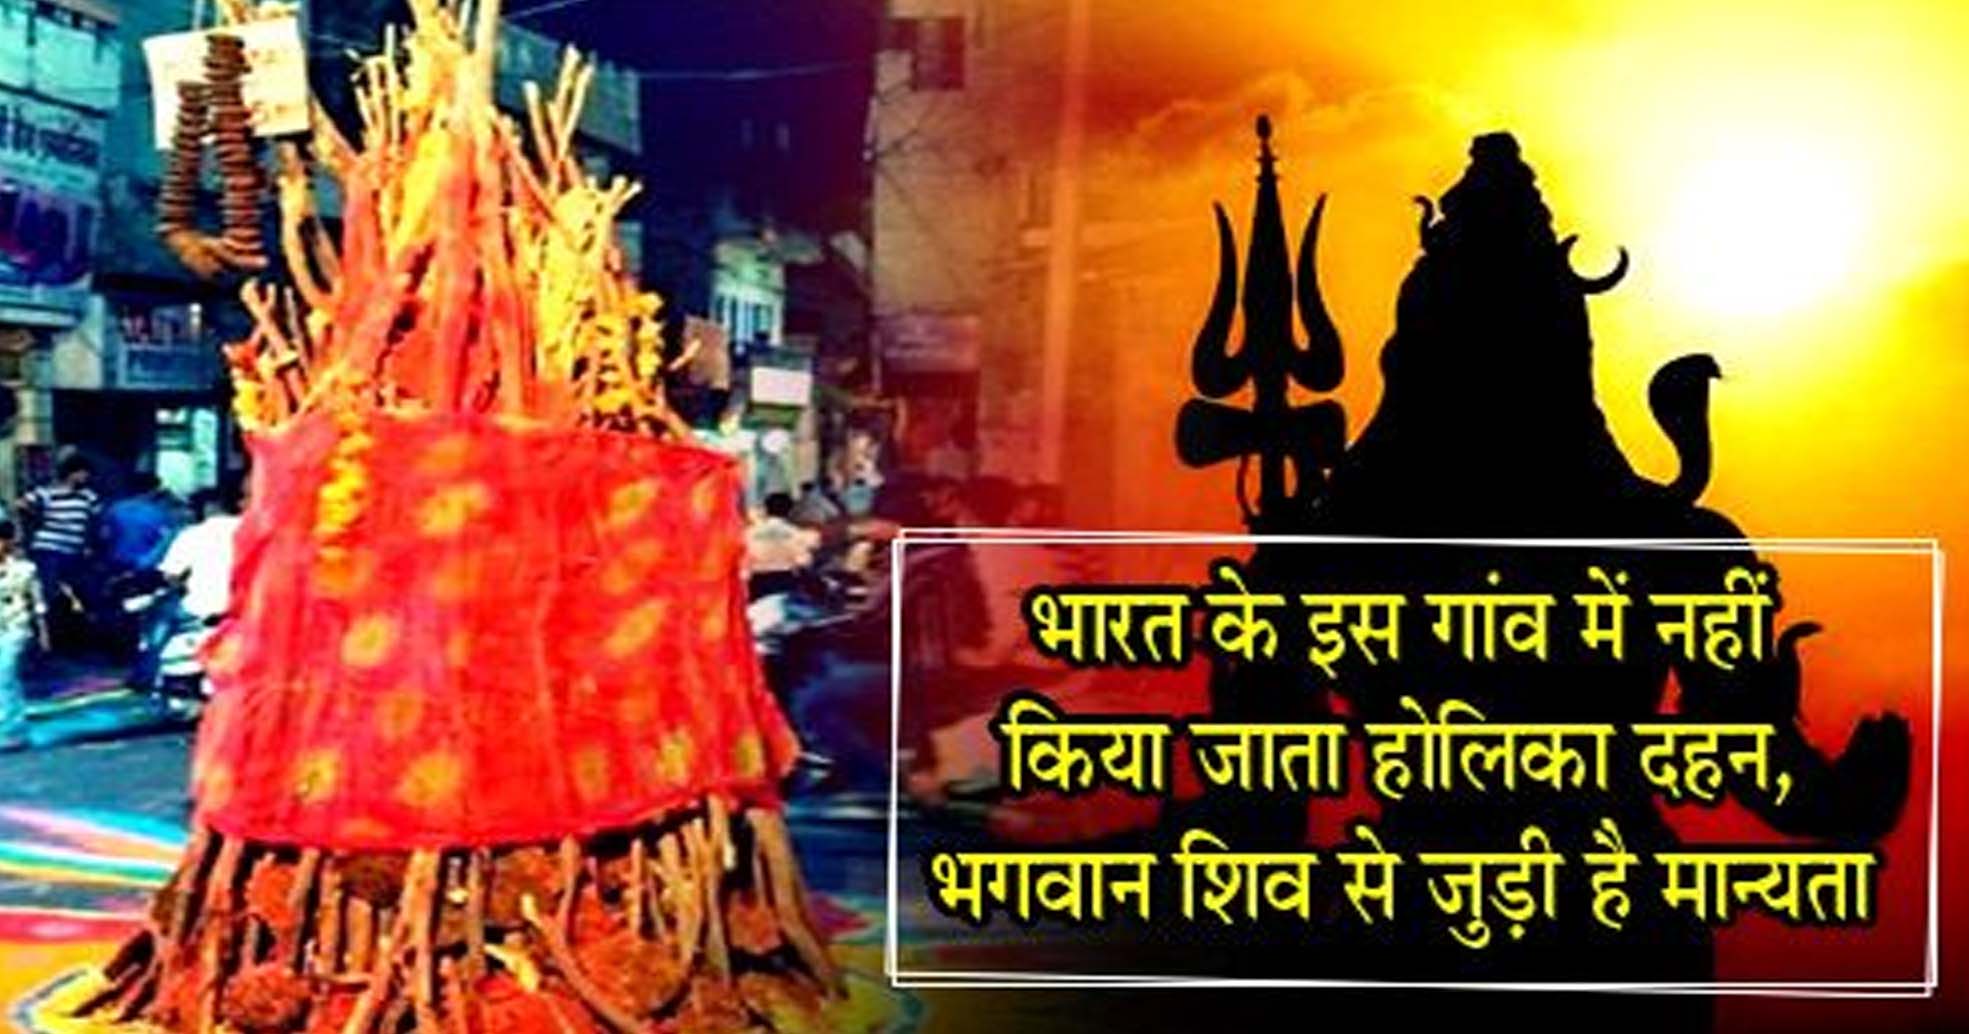 सहारनपुर के इस गांव में नहीं होता होलिका दहन, मान्यता है कि झुलस जाते हैं भगवान के पैर